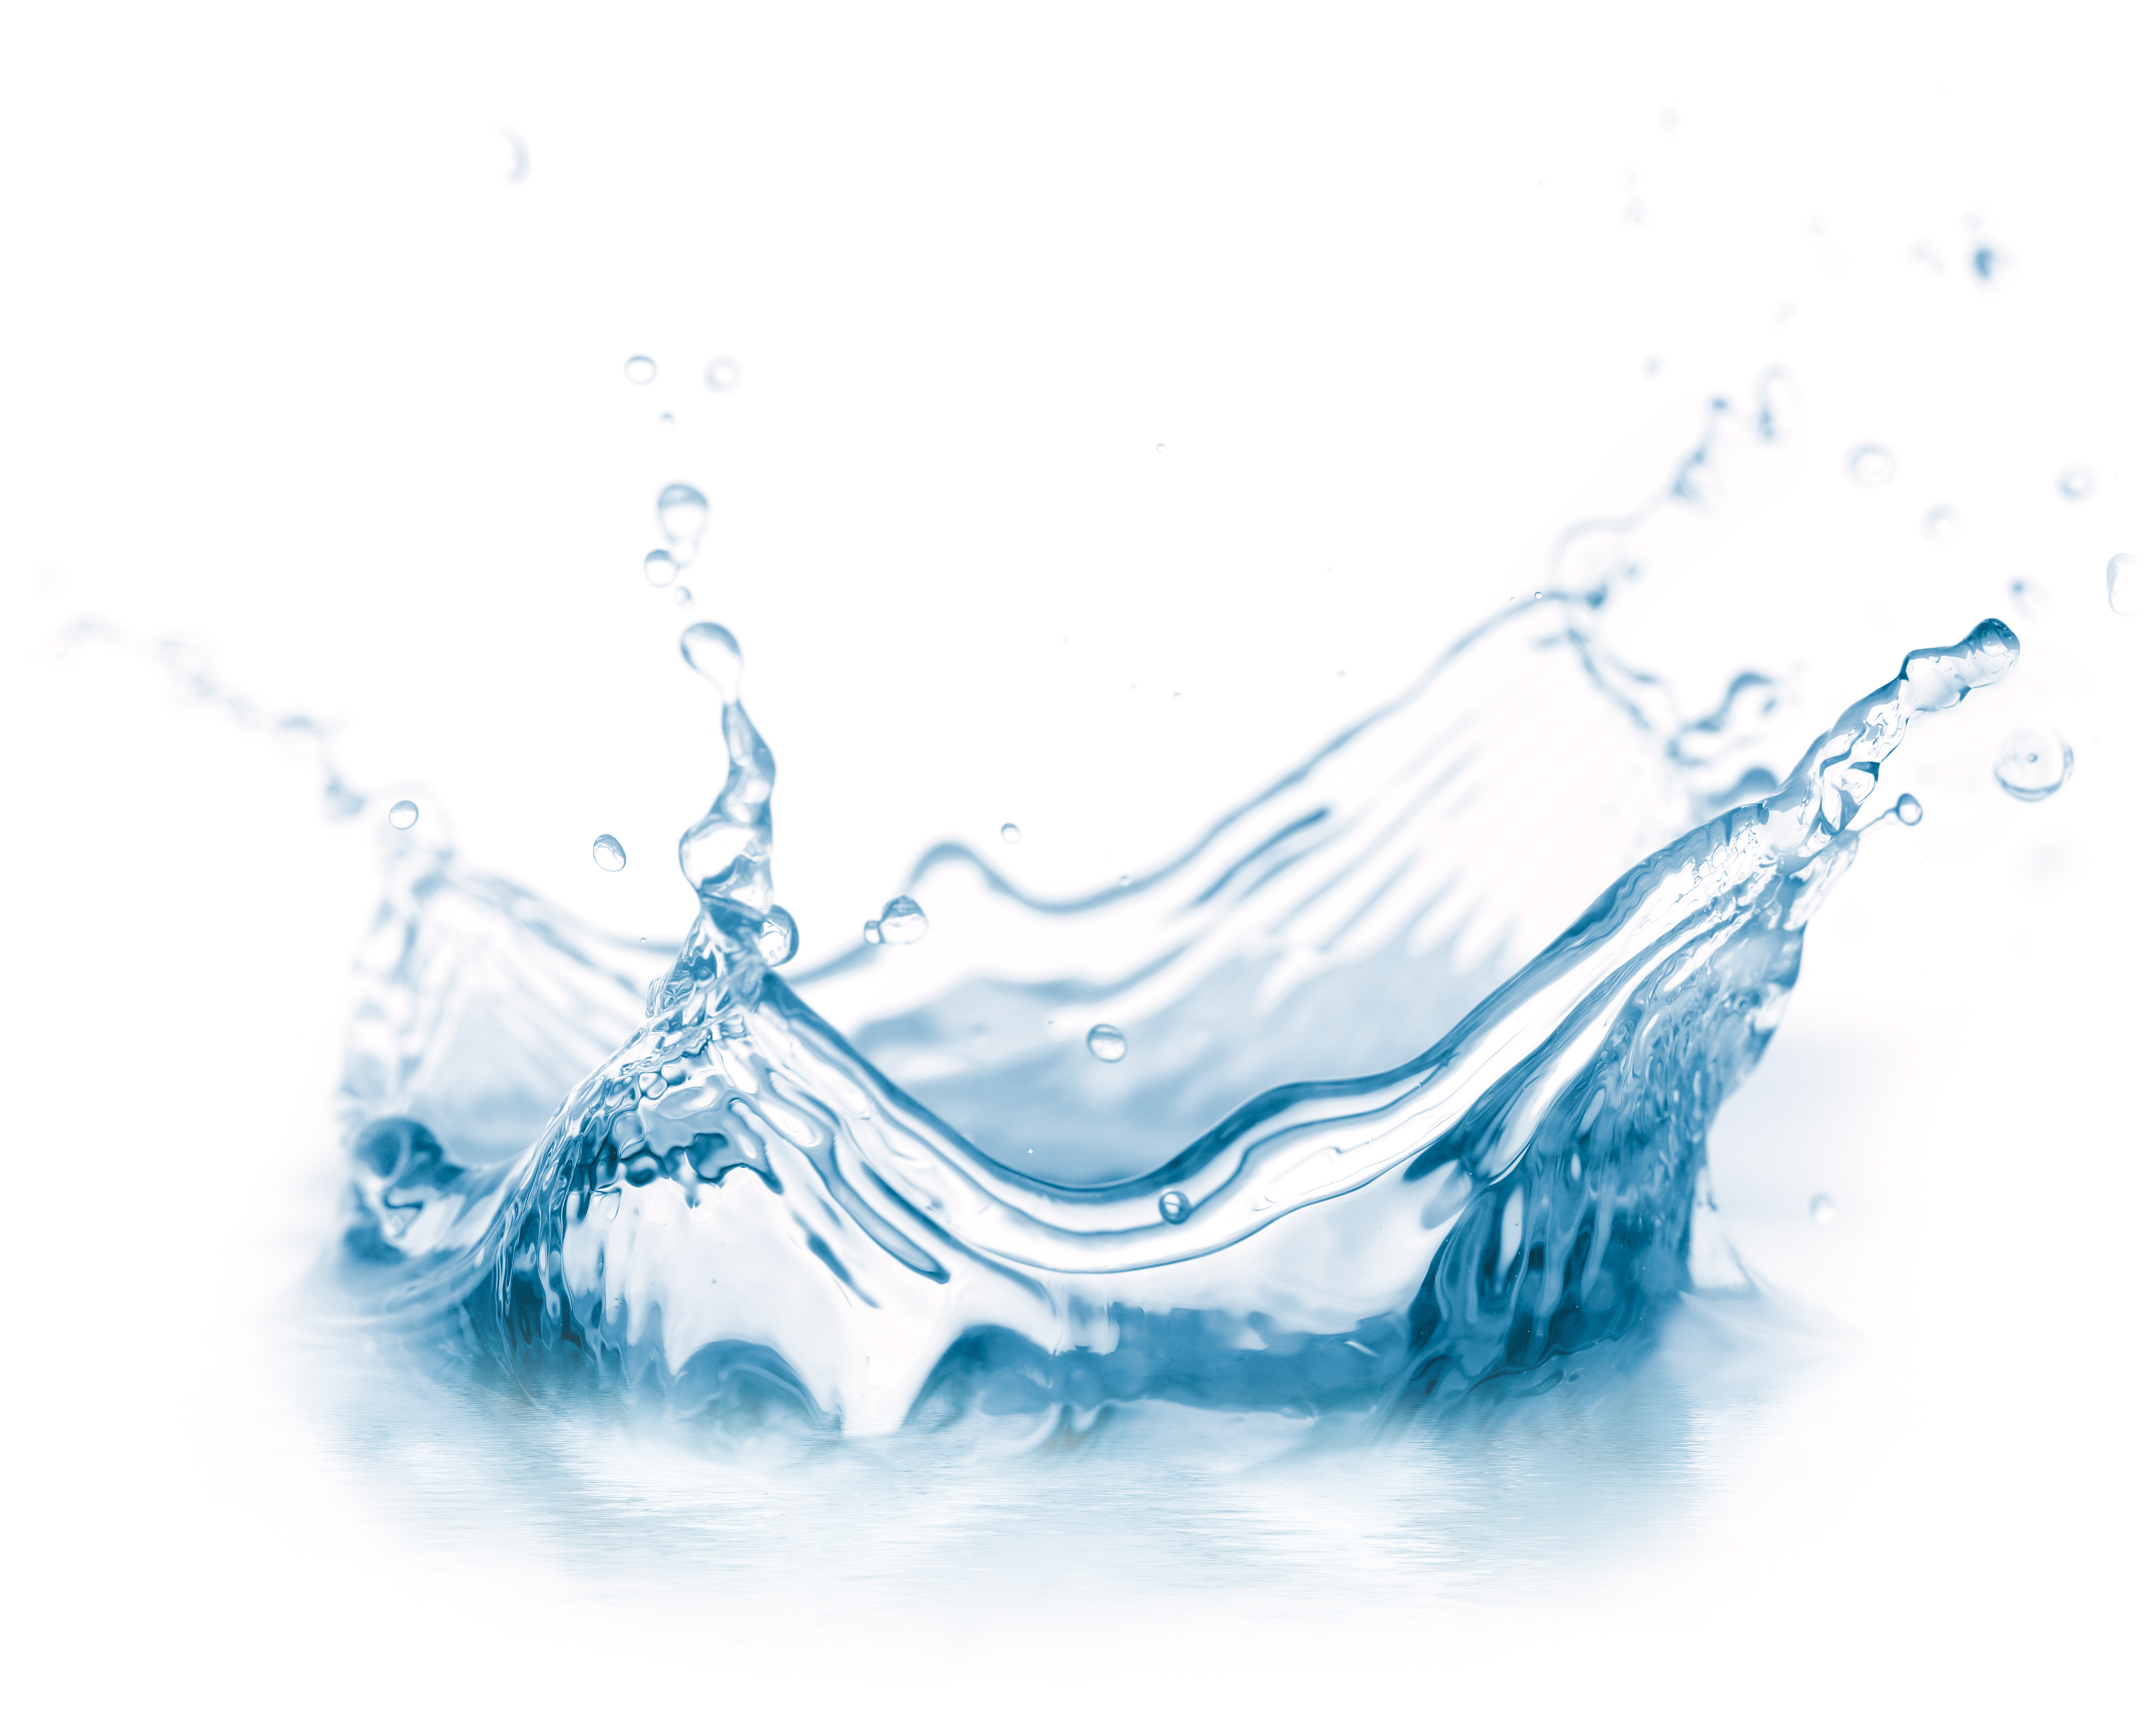 Pin Drawn Water Drop Wave Splash #2 - Water Drop Splash, Transparent background PNG HD thumbnail